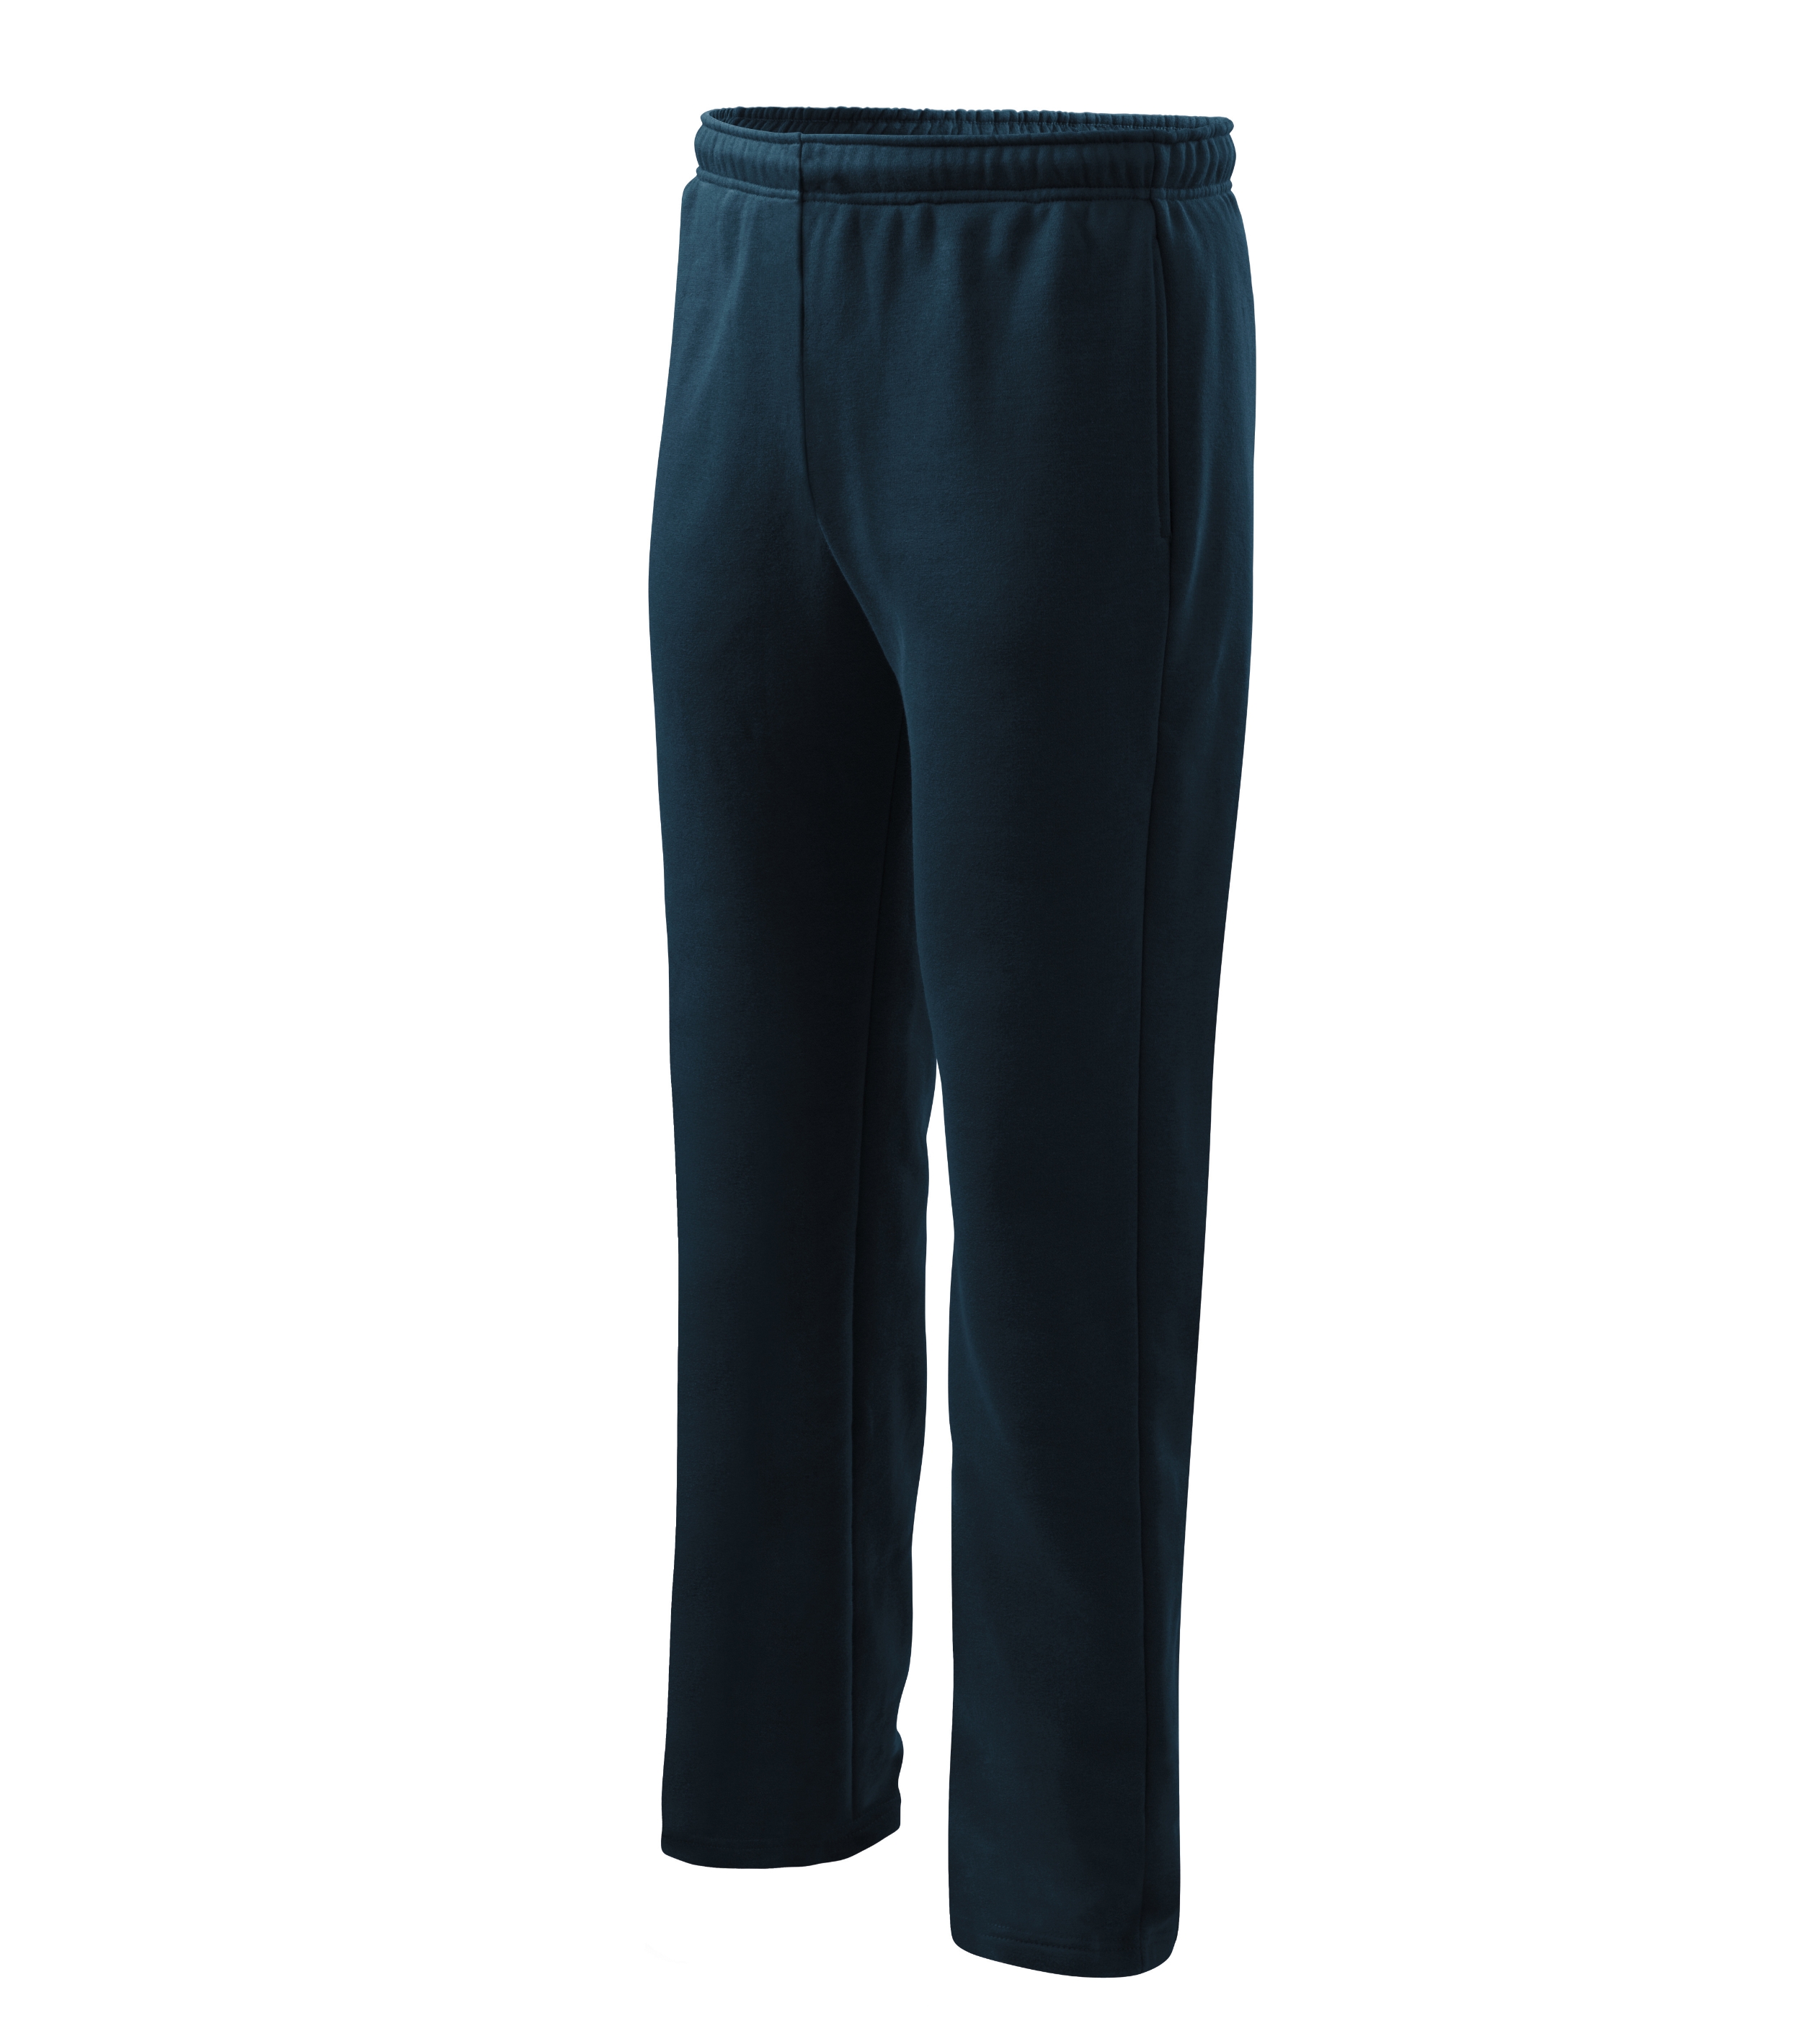 Jogginghose für Herren und Kinder - COMFORT 607 - ideal für Sport- und Bewegungsaktivitäten und elastischer Taillenkragen - Jogginghose Herren als Freizeithose  und Sport 